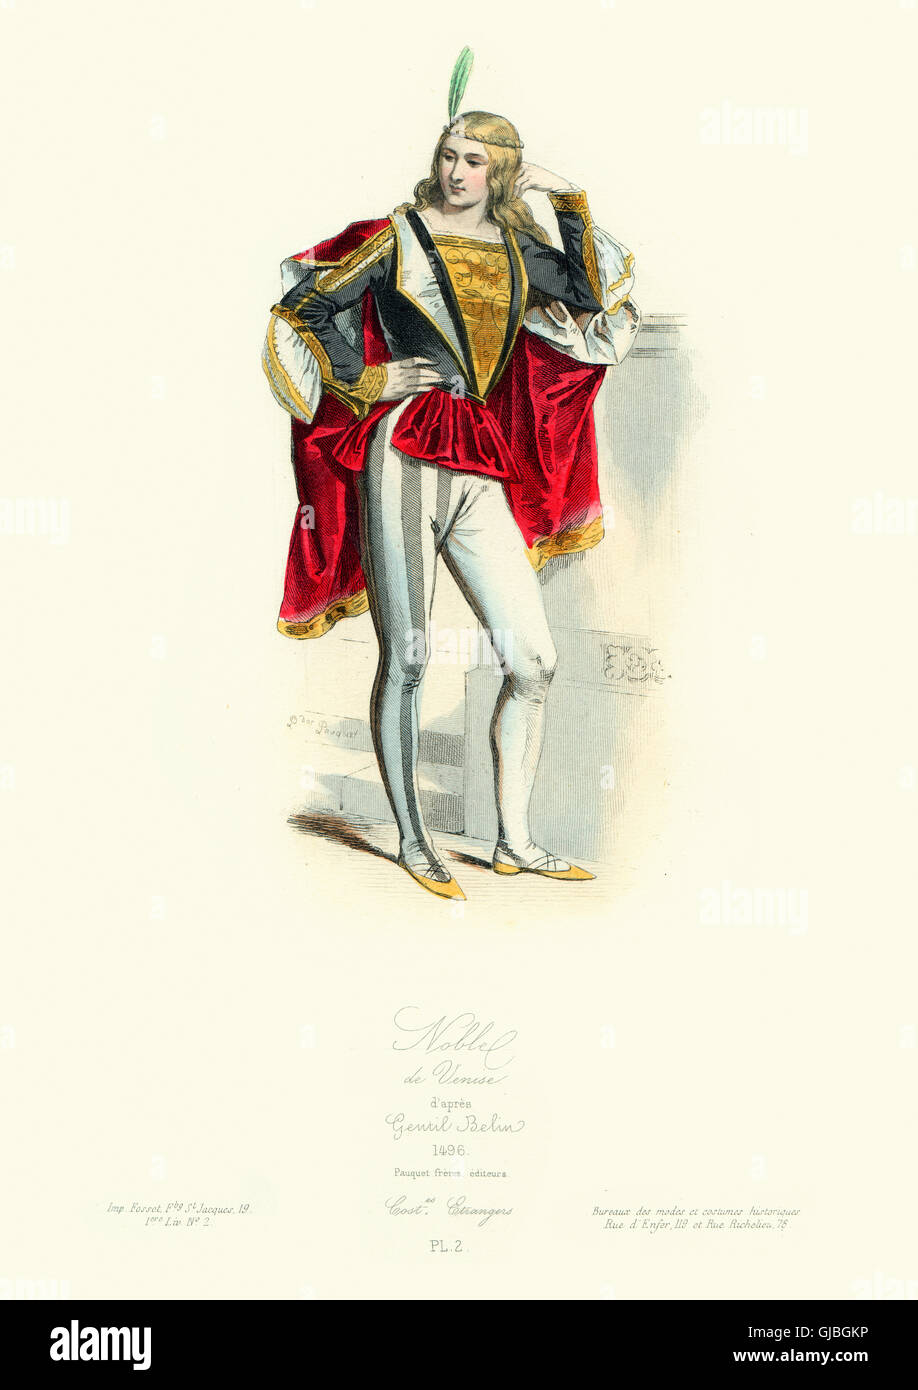 Disfraz de un noble veneciano del siglo xv. Modos et trajes históricos, Pauquet Freres Foto de stock